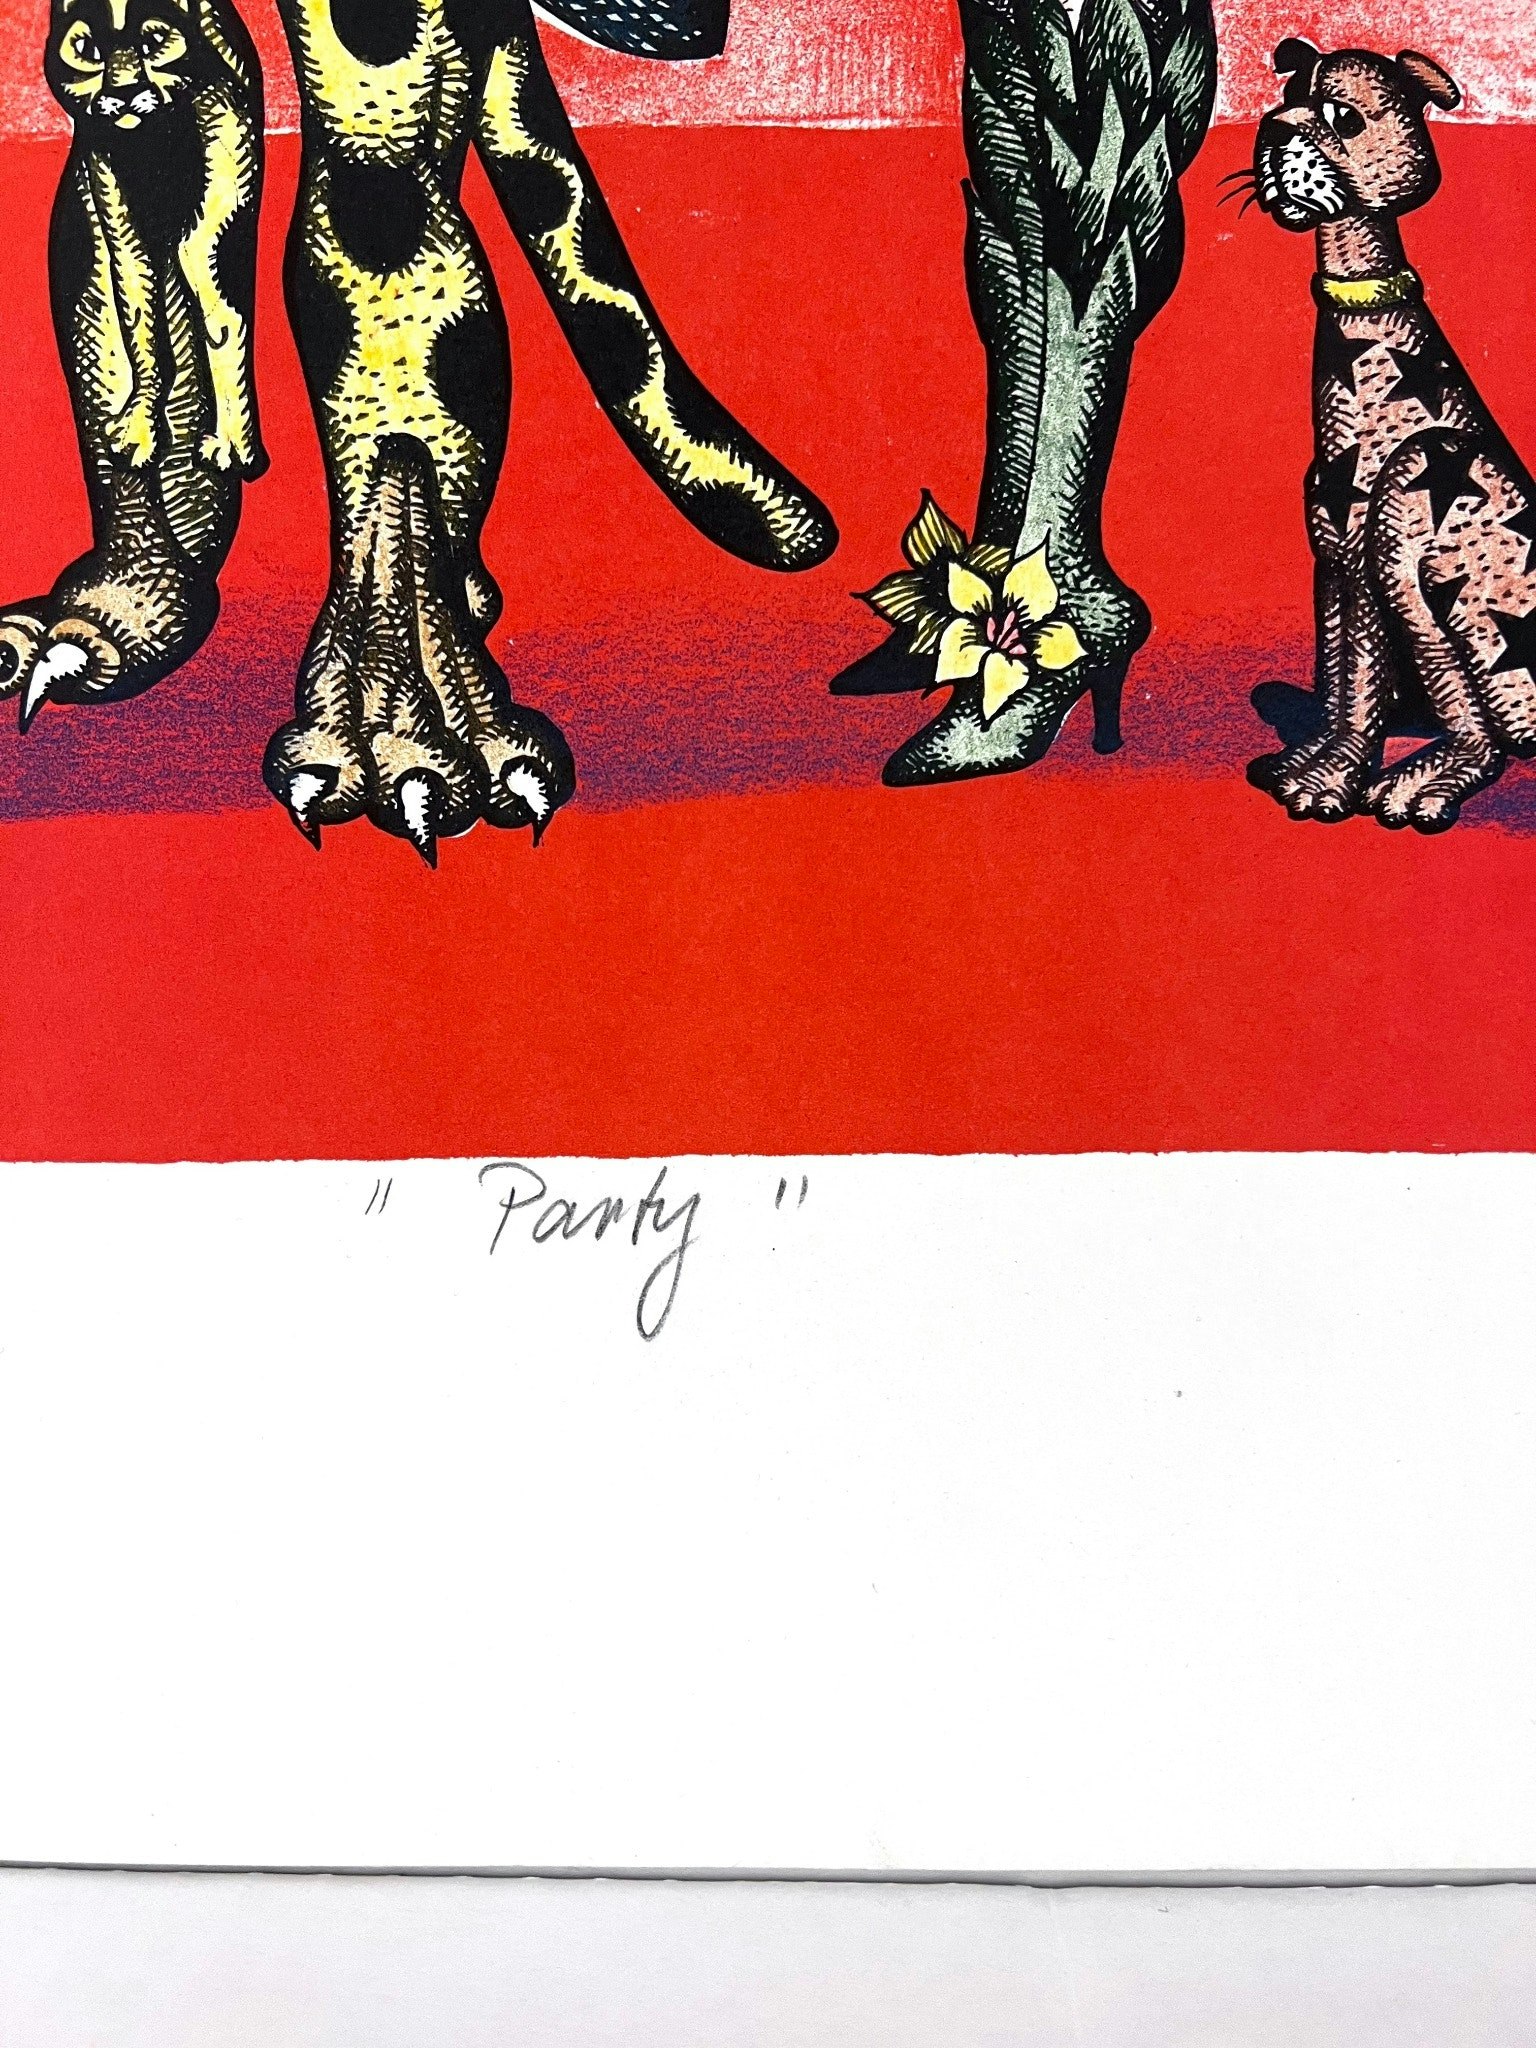 "Party" av Hans Arnold - Handkolorerat litografi 71,5x52 cm